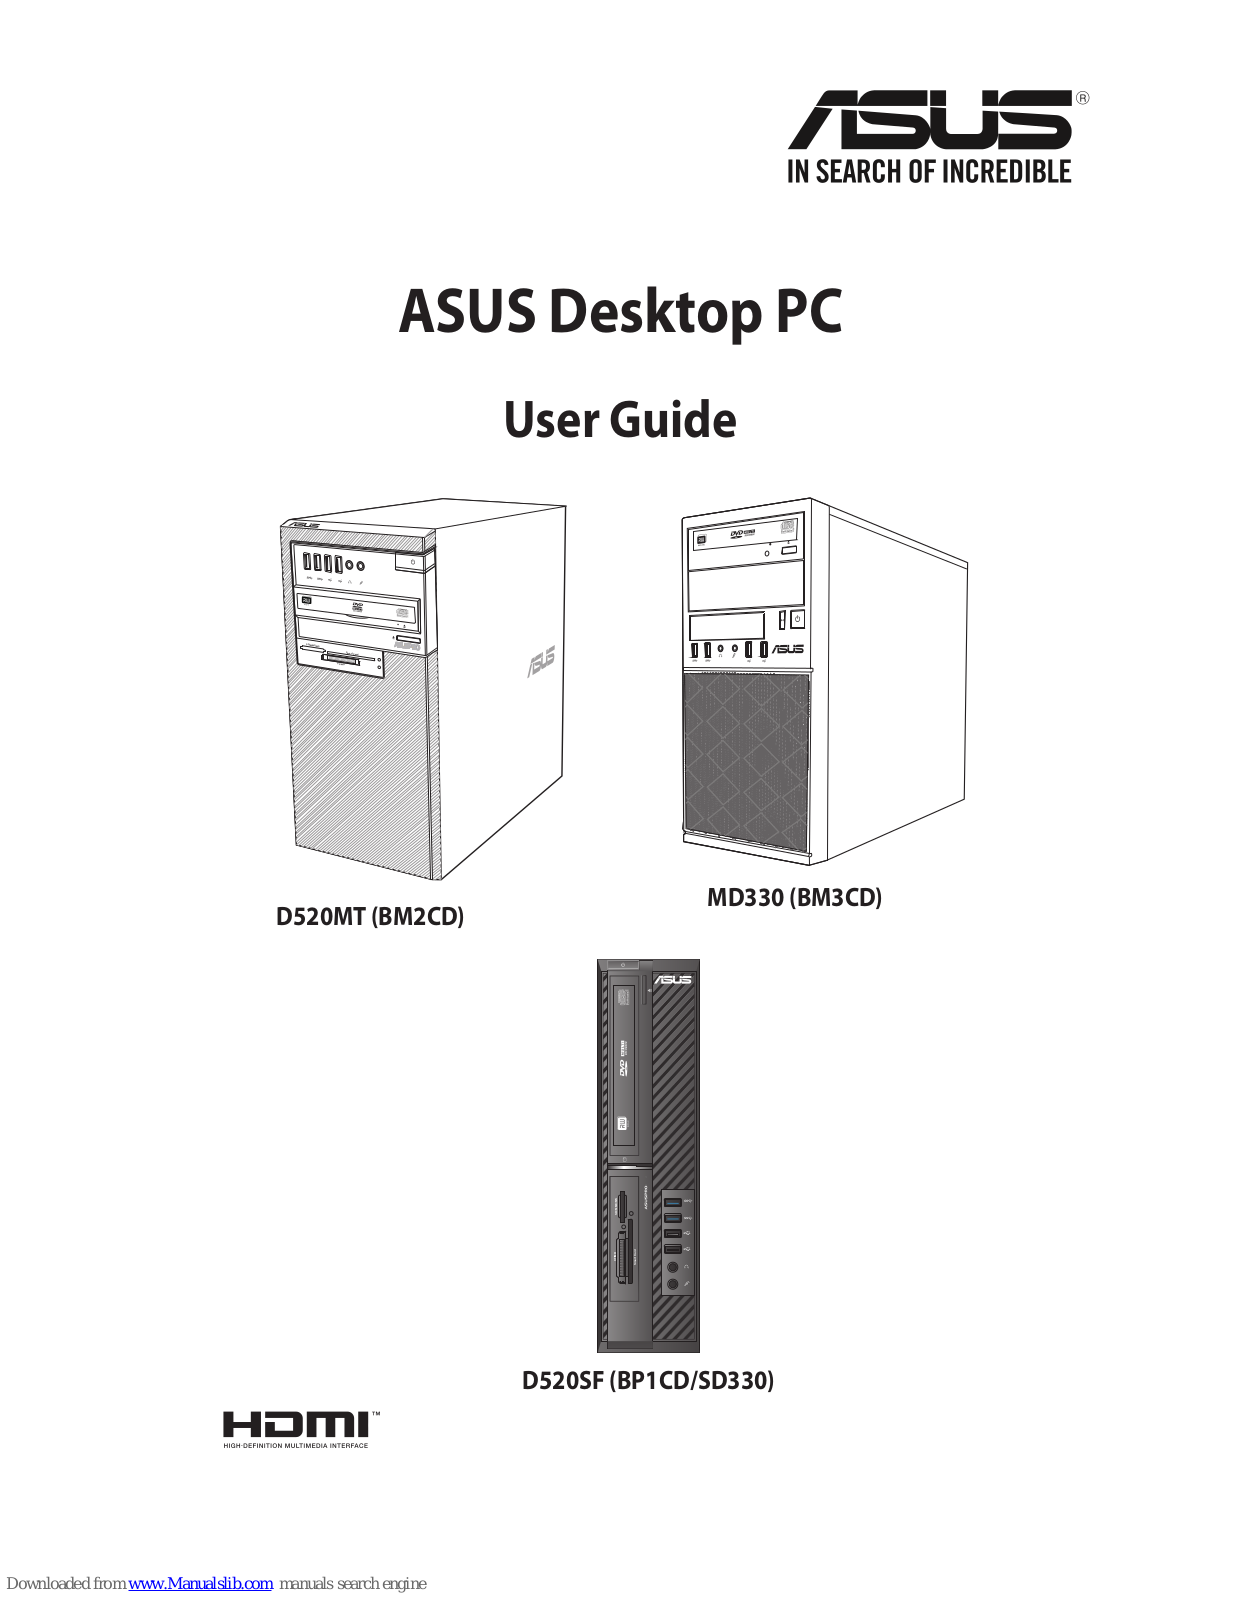 Asus D520MT (BM2CD), MD330 (BM3CD), D520SF (BP1CD/SD330), D320MT, BM5CD User Manual